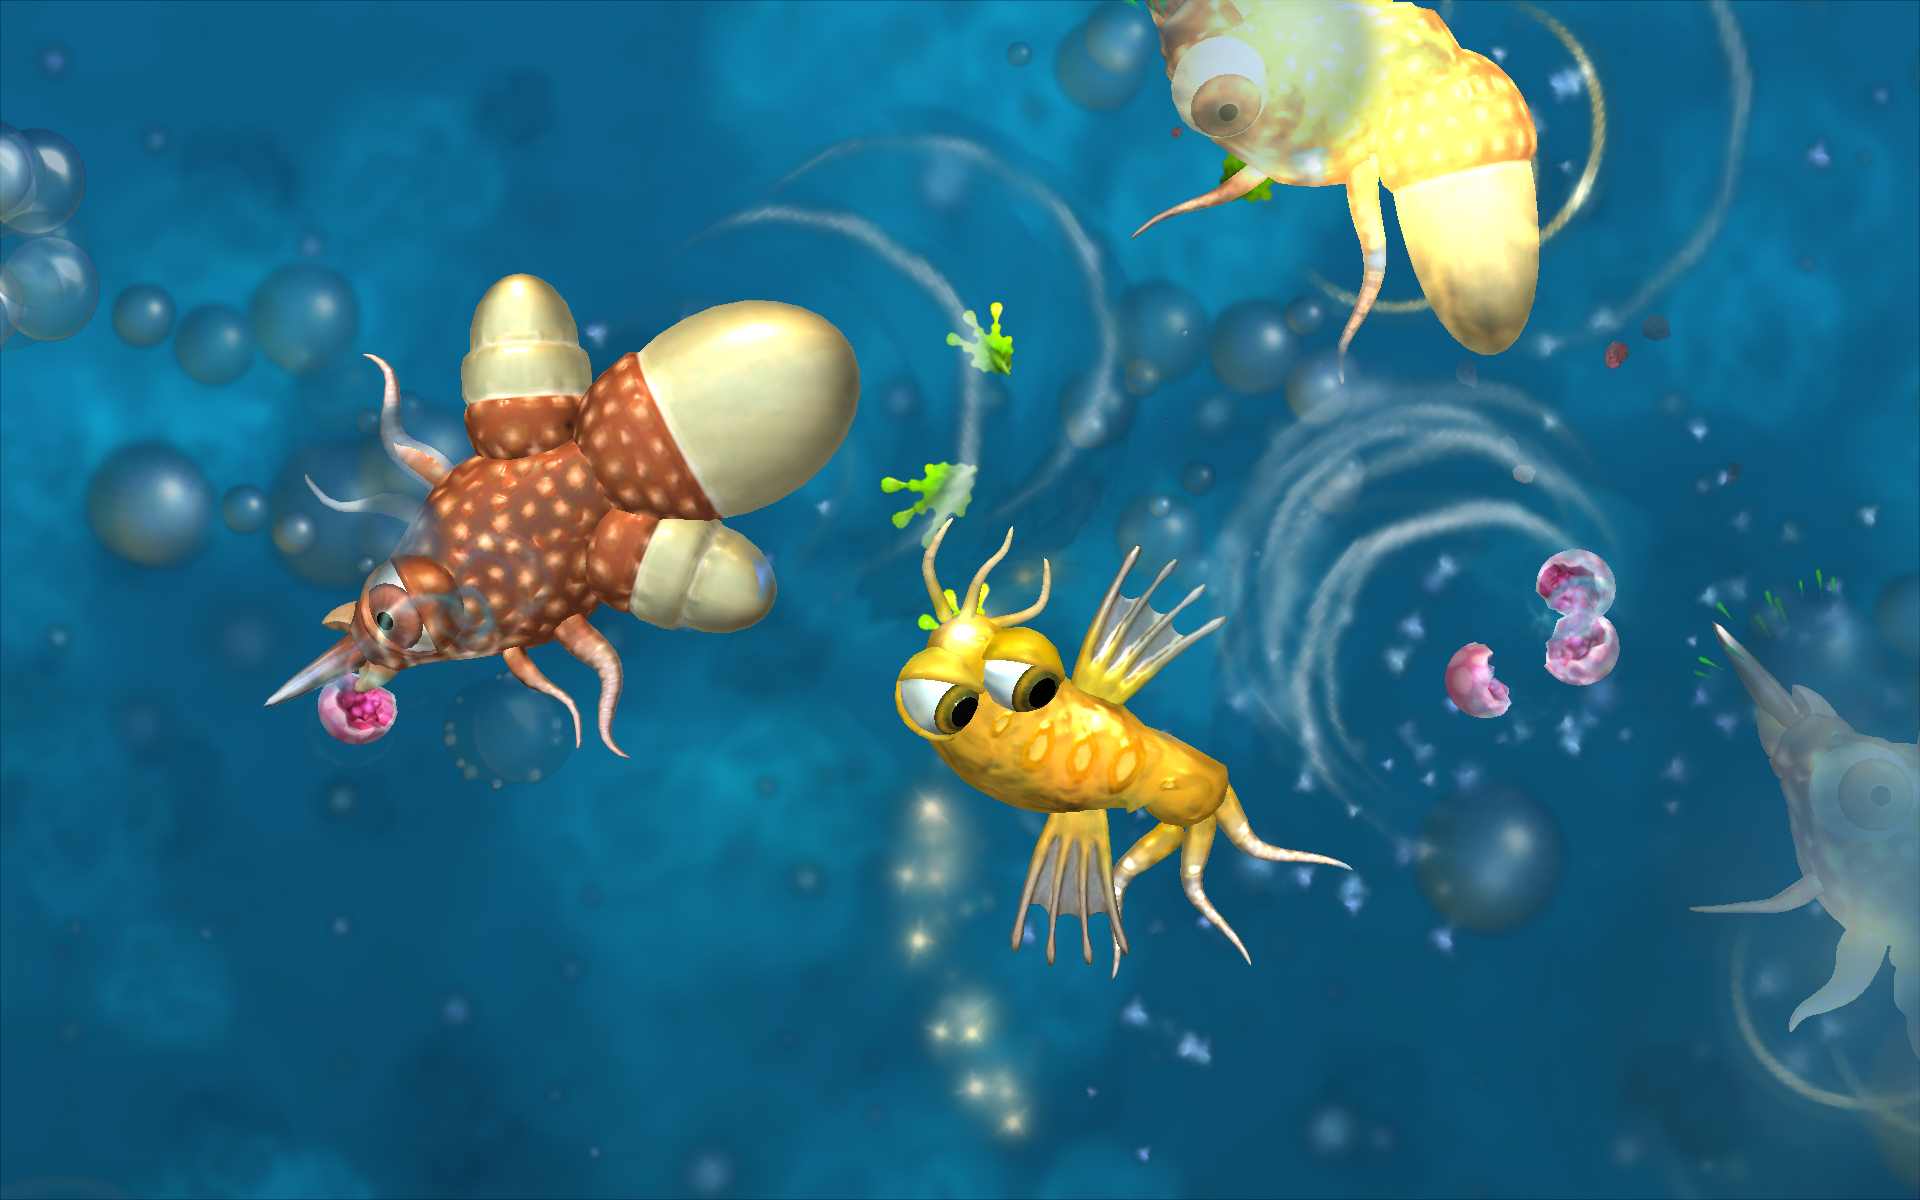 Spore aquatic stage mod